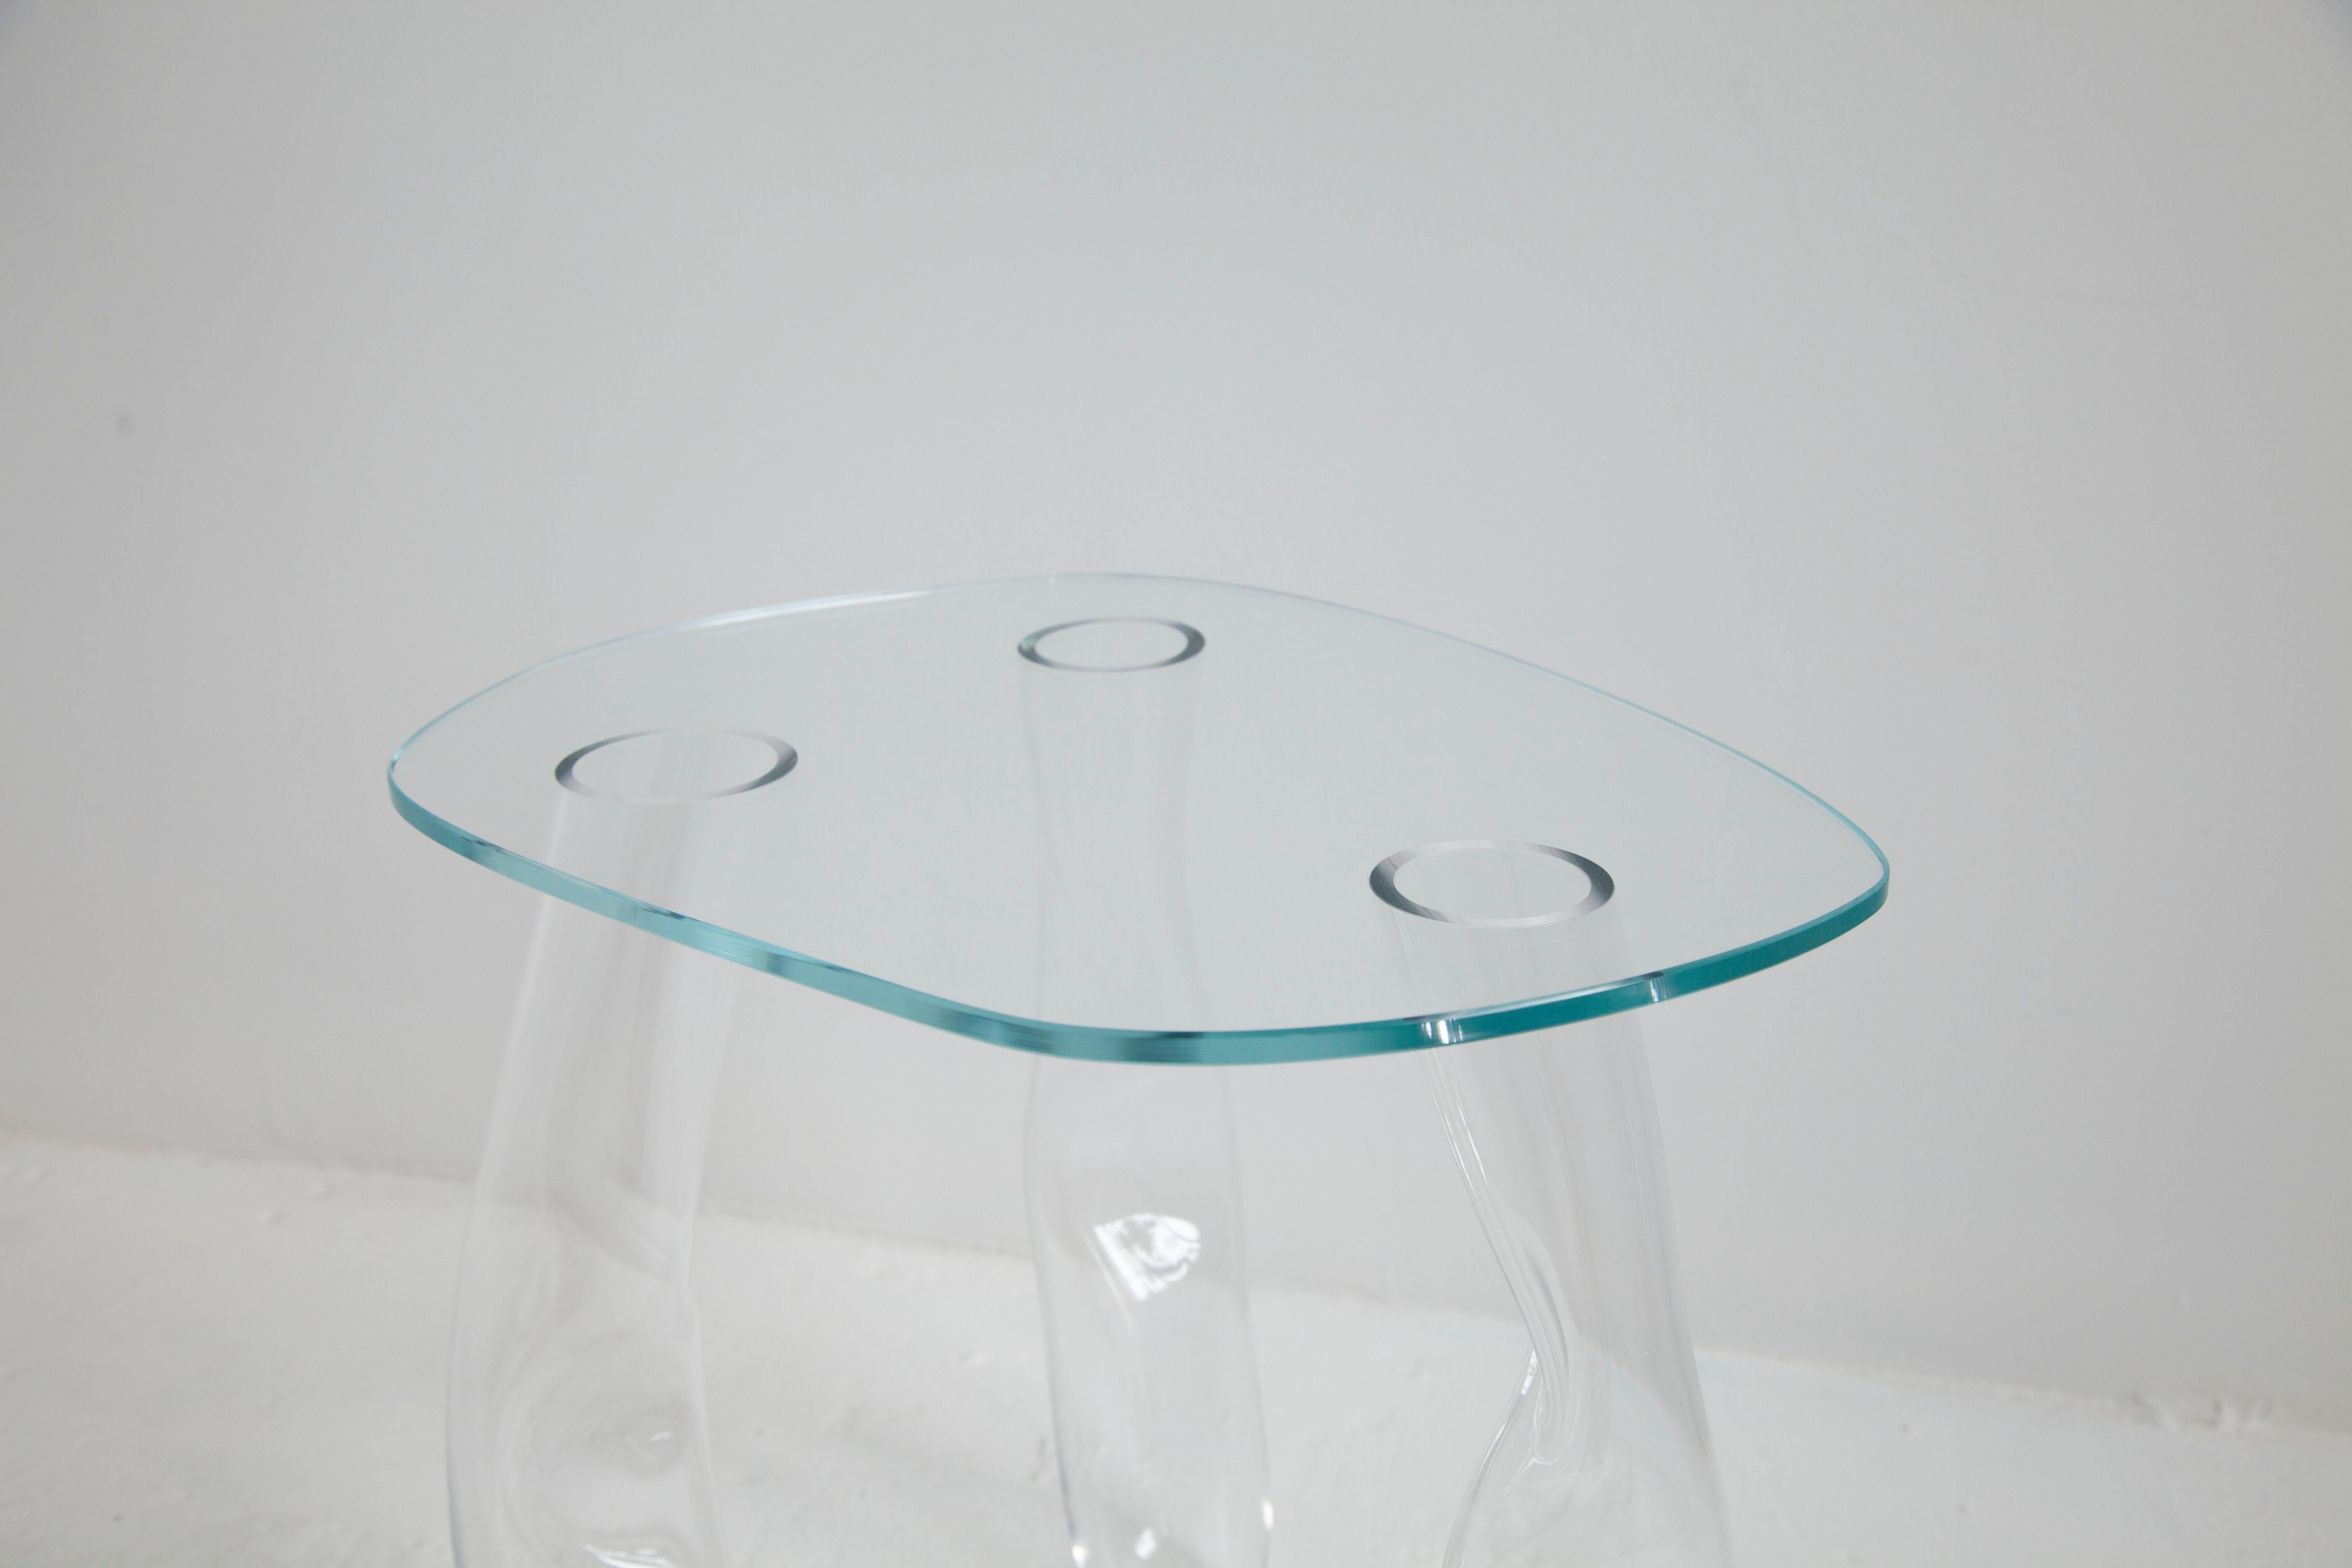 Die Glastische von Clara Jorisch sind aus mundgeblasenem Glas und werden mit UV-Licht verklebt. Alle Tische sind Unikate - eine Reminiszenz an die Geste des Glasbläsers, die jedem Tisch seine besondere Form verleiht. 

Clara Jorisch ist eine